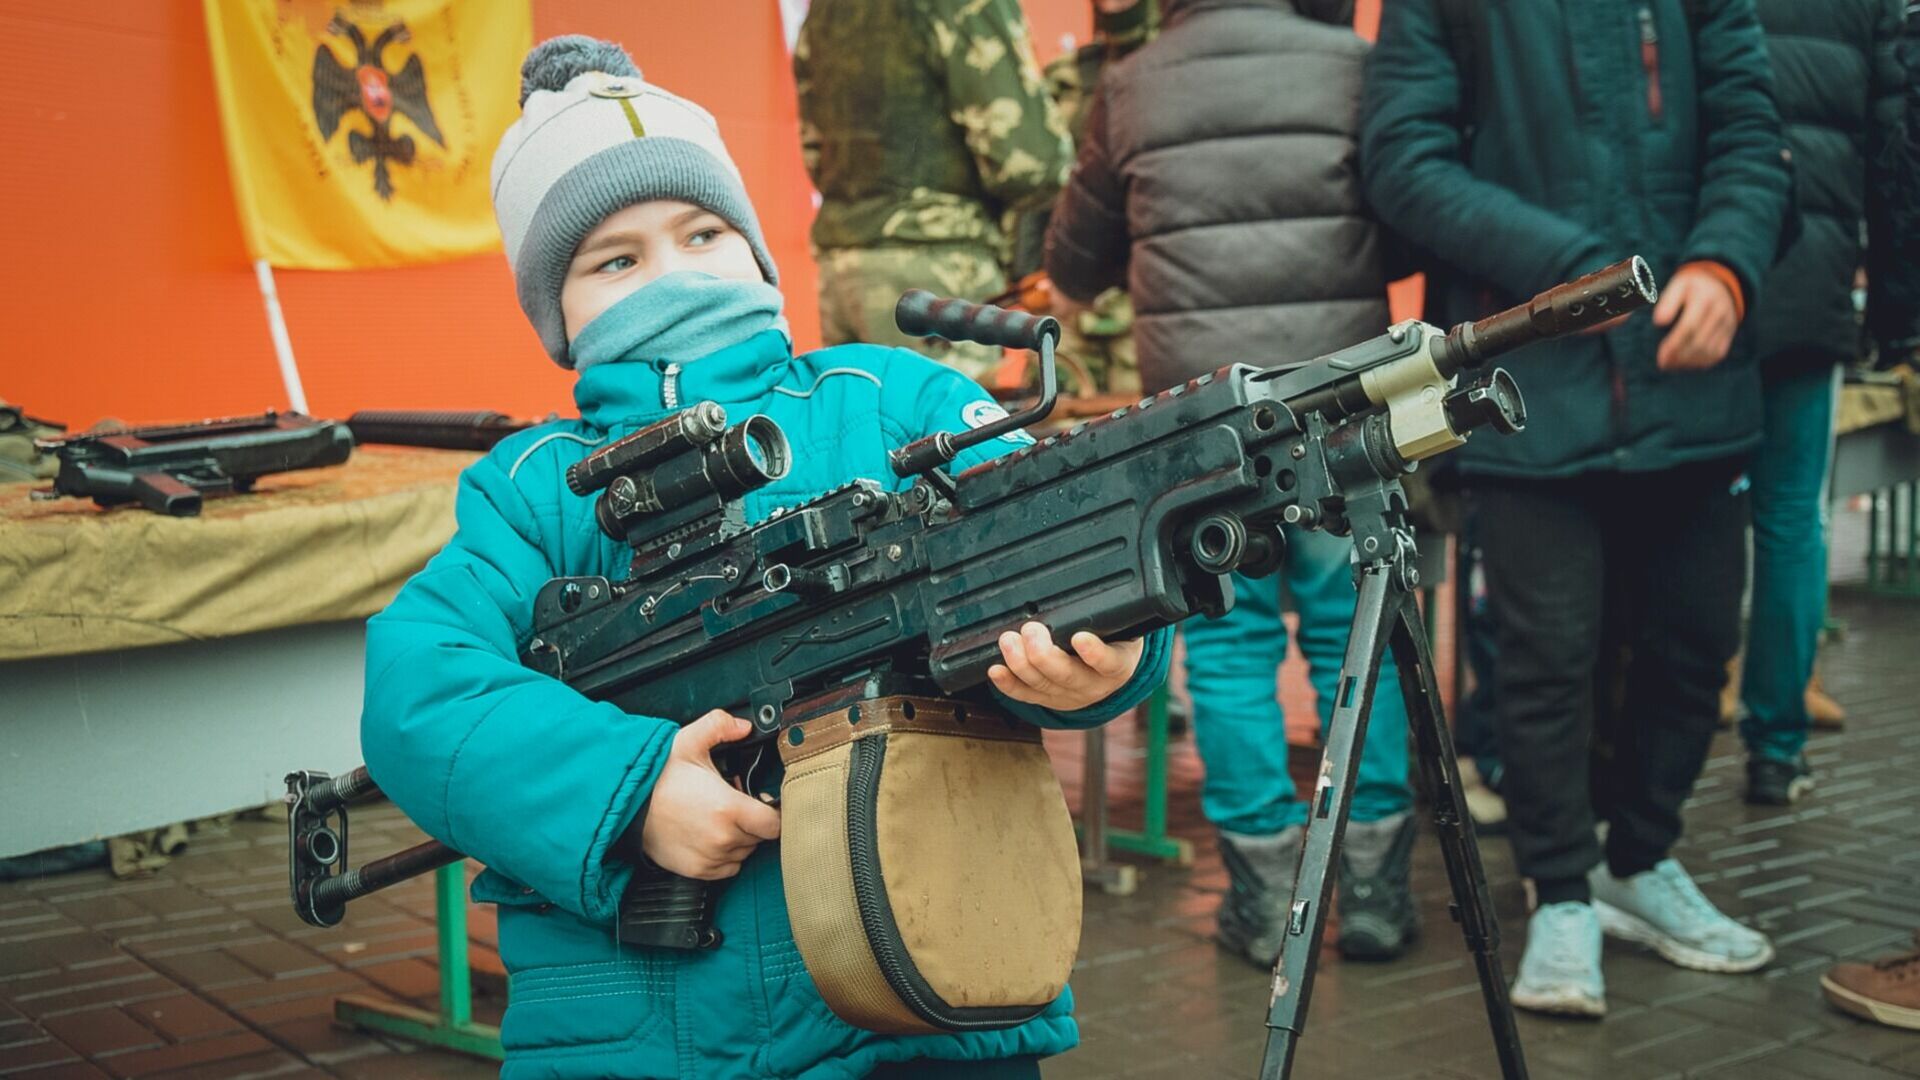 Детей научат стрелять из гранатомета и управлять квадрокоптерами в Екатеринбурге